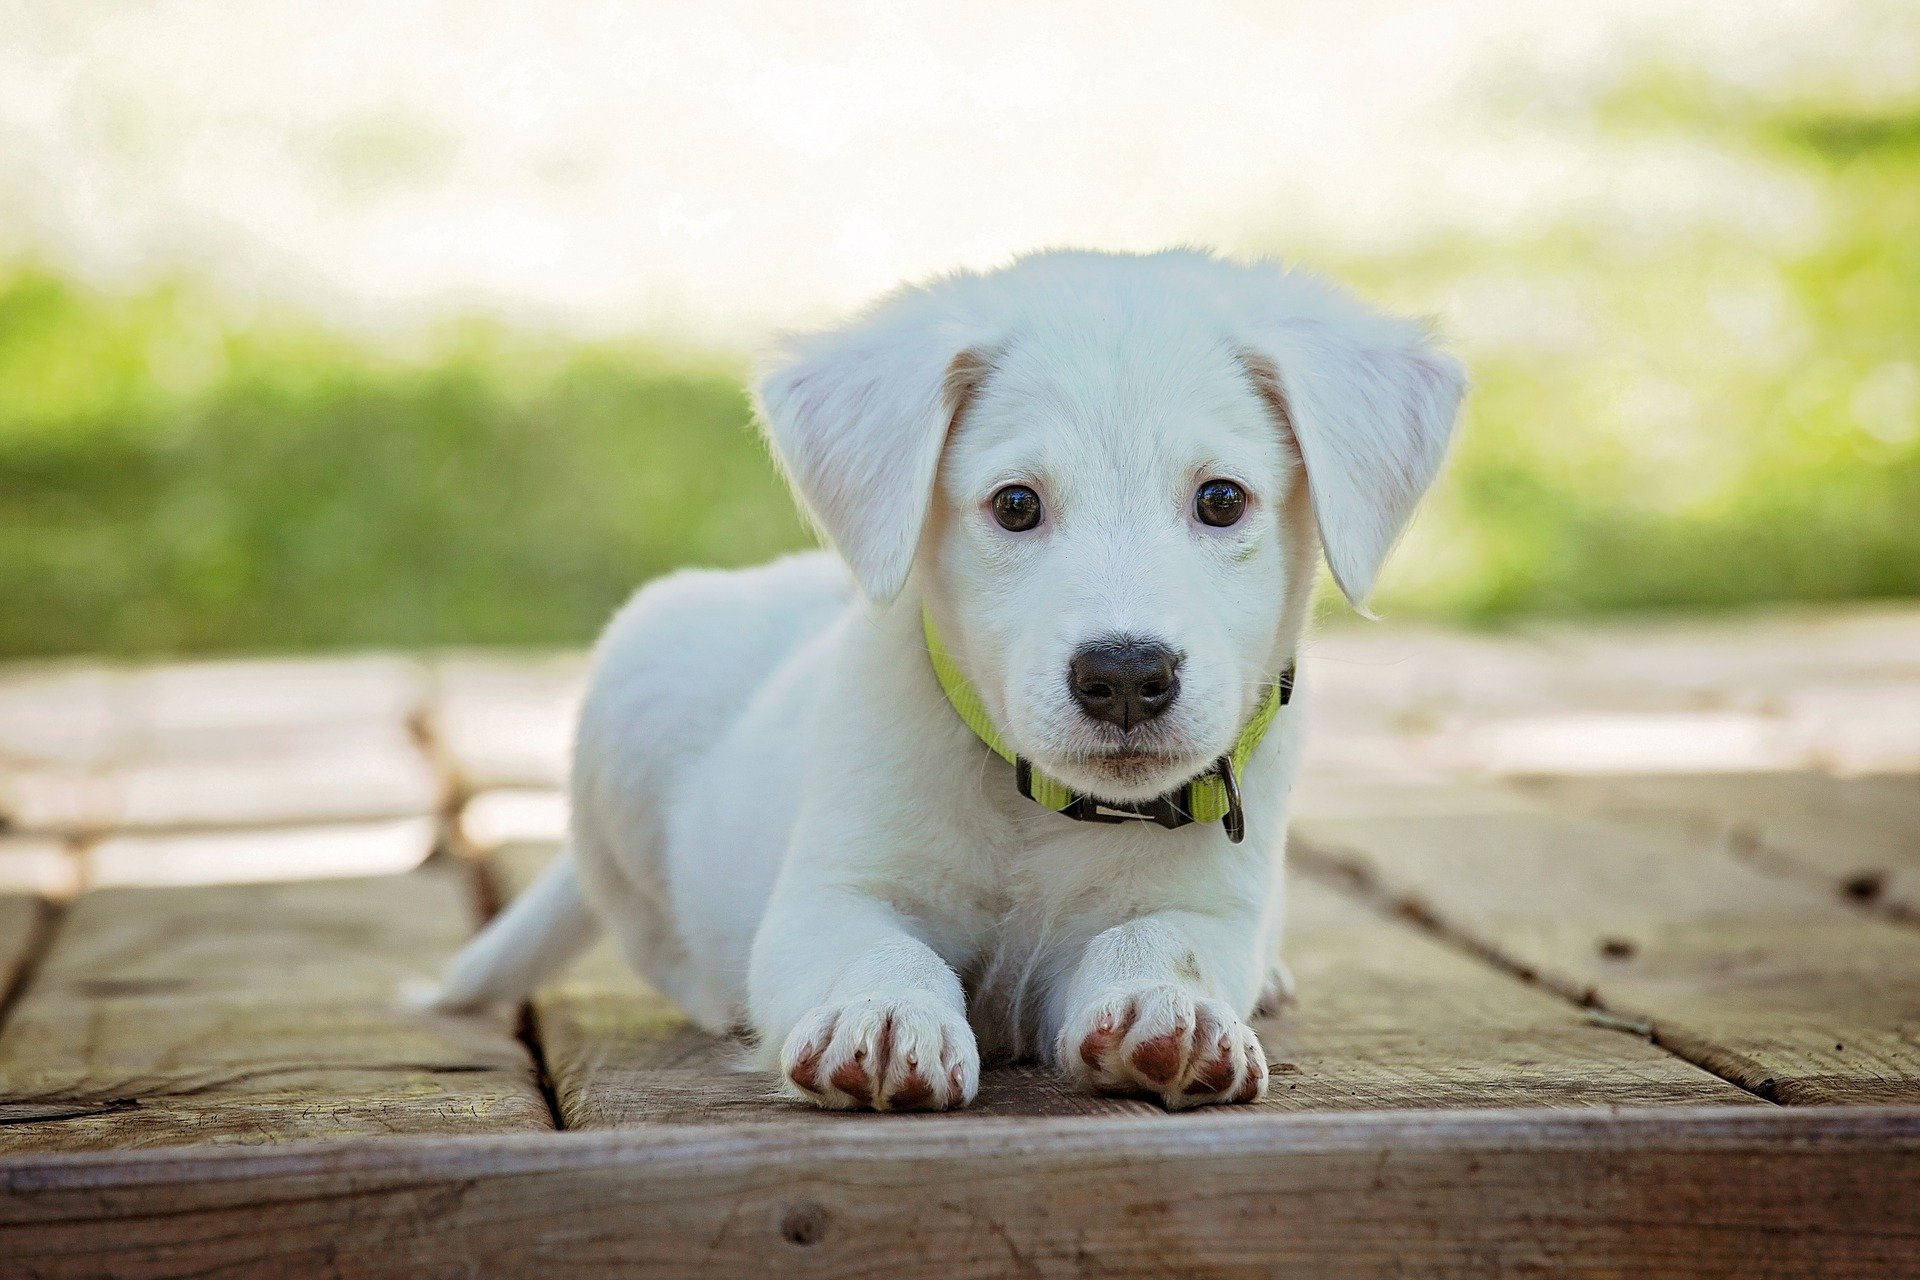 Tumori i shpretkës tek qentë: mësoni më shumë rreth sëmundjes